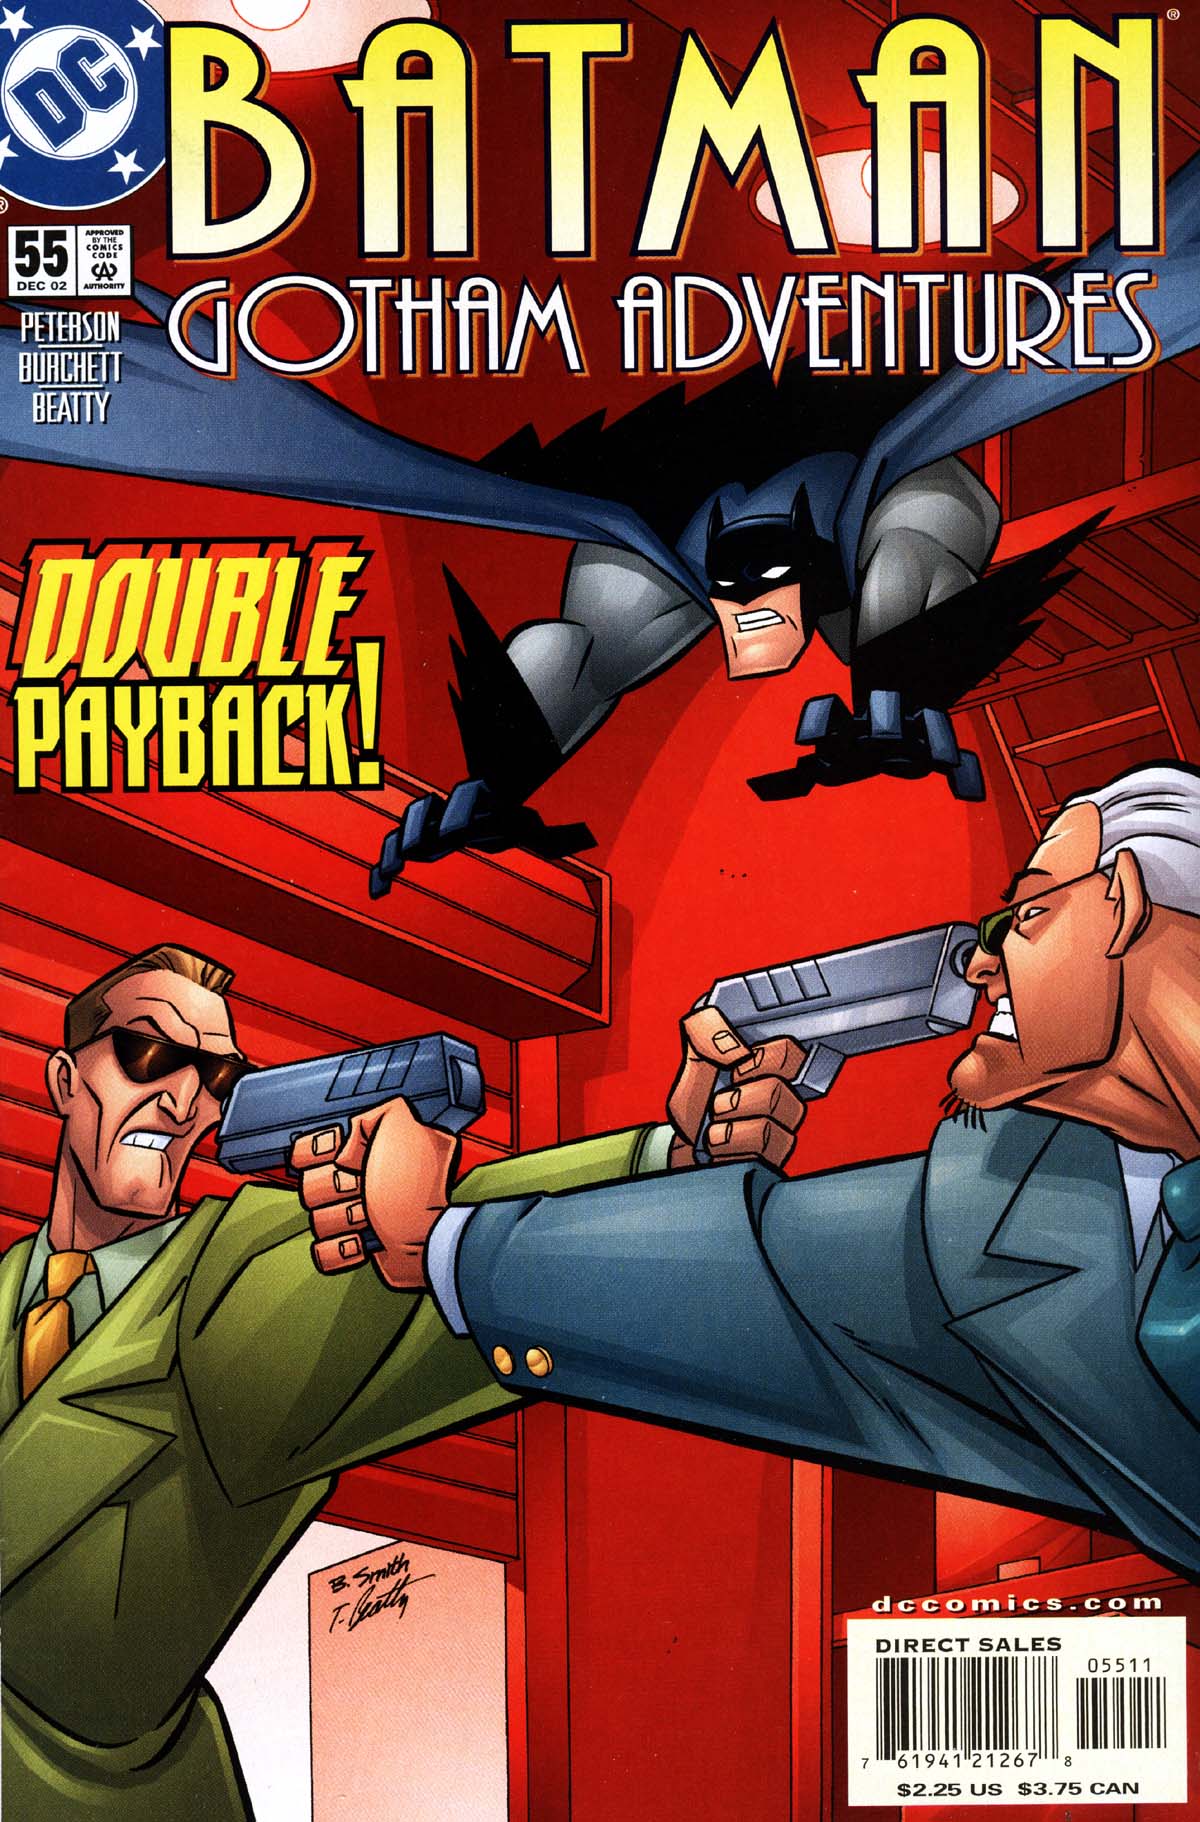 Batman: Gotham Adventures issue 55 - Page 1